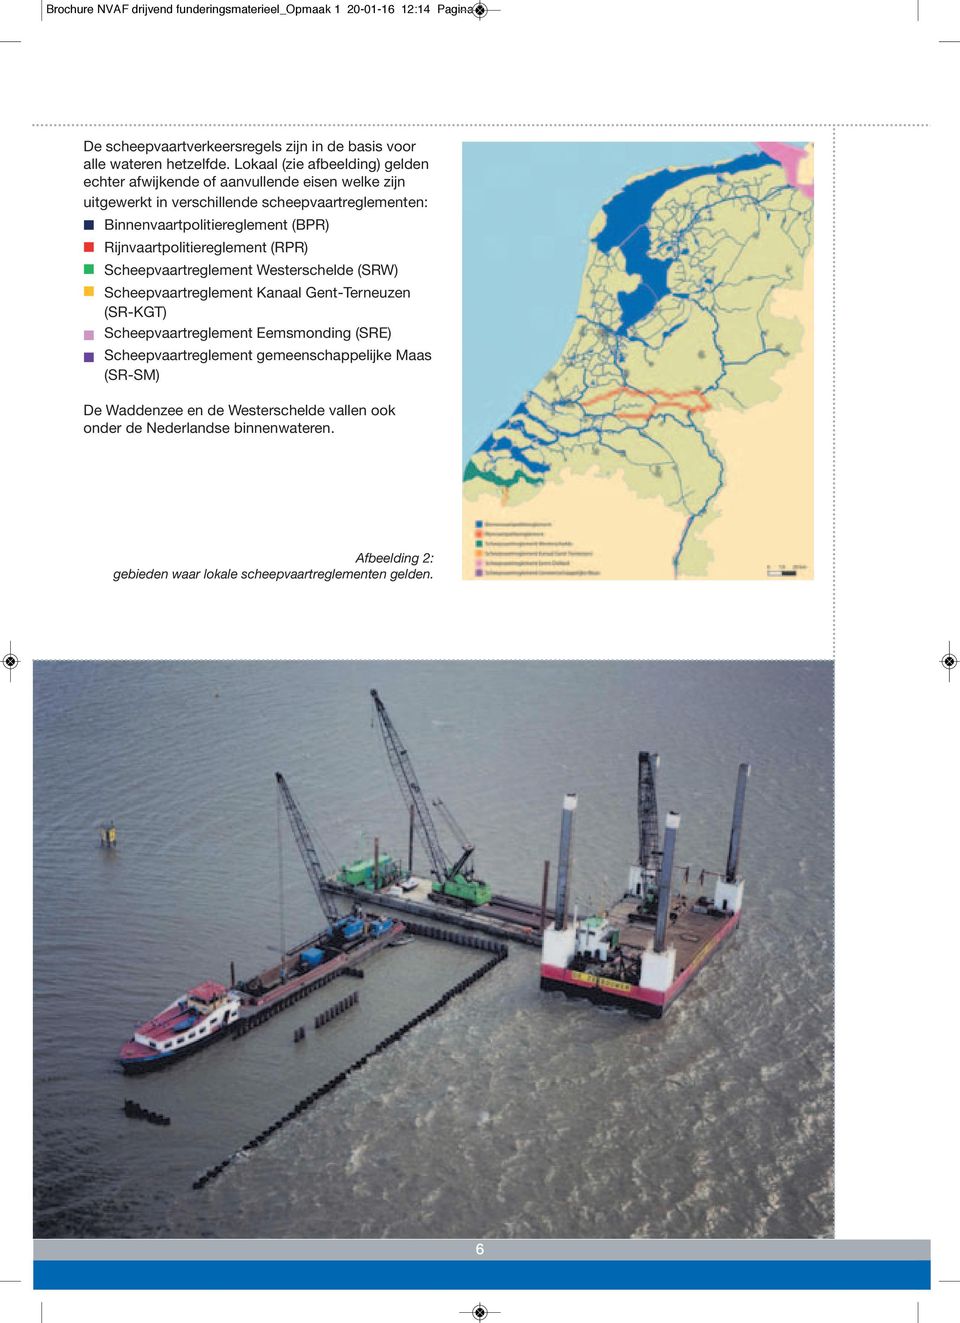 Rijnvaartpolitiereglement (RPR) Scheepvaartreglement Westerschelde (SRW) Scheepvaartreglement Kanaal Gent-Terneuzen (SR-KGT) Scheepvaartreglement Eemsmonding (SRE)